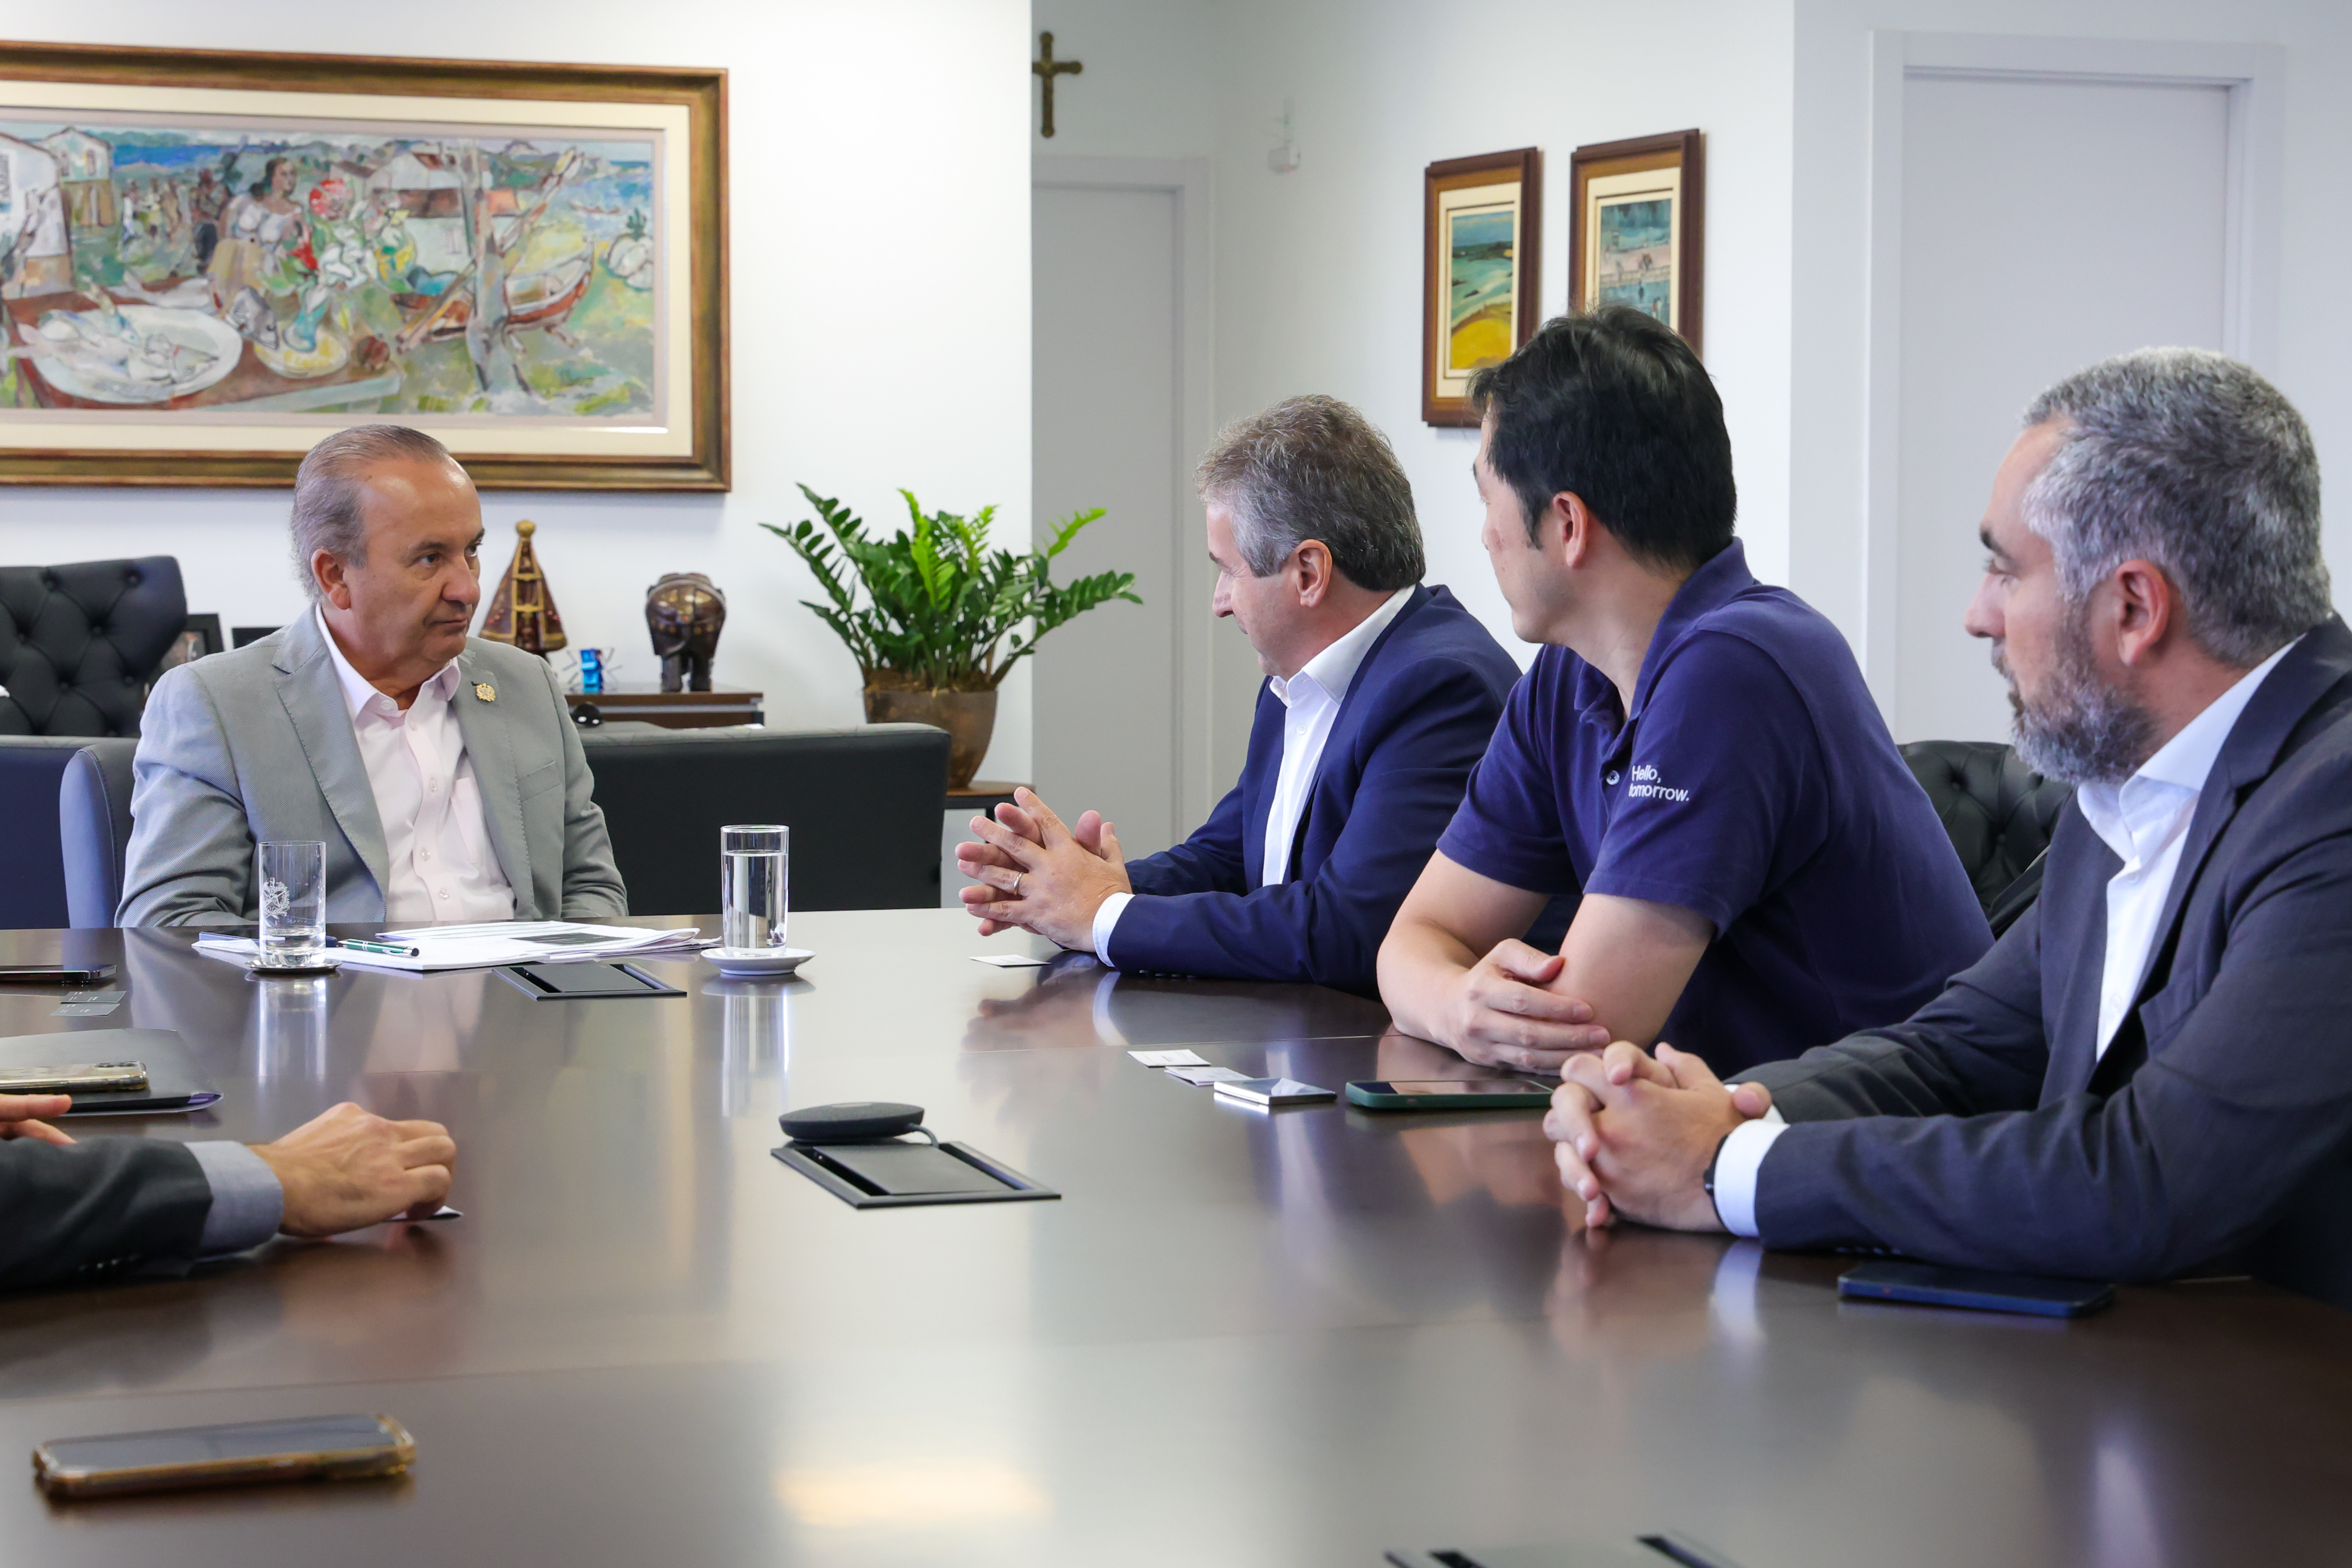 Fabricante internacional de automóveis planeja expansão no Brasil com nova filial em Santa Catarina